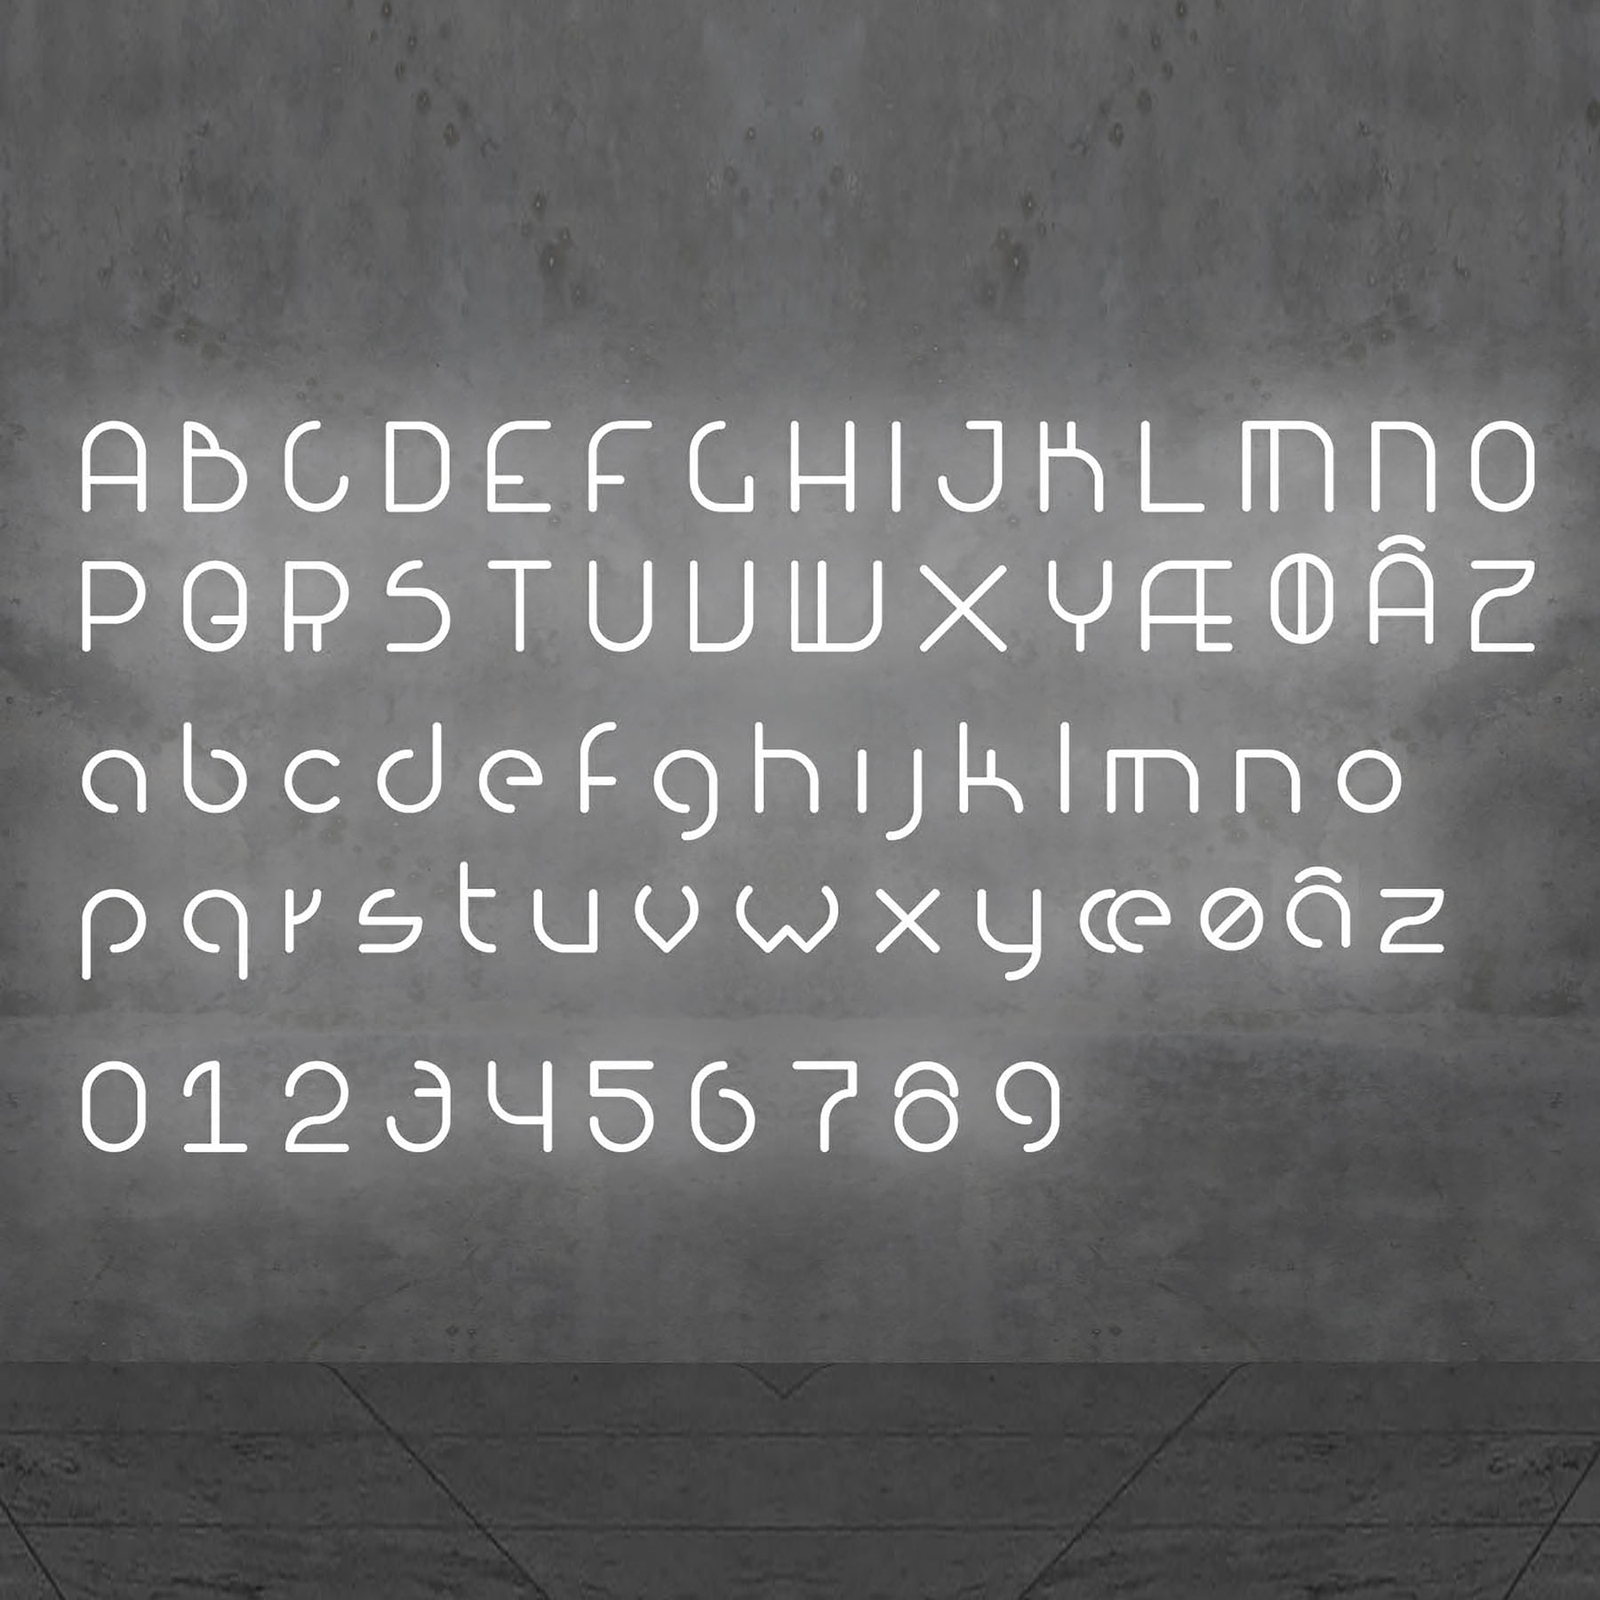 Artemide Alphabet of Light væg, lille bogstav i